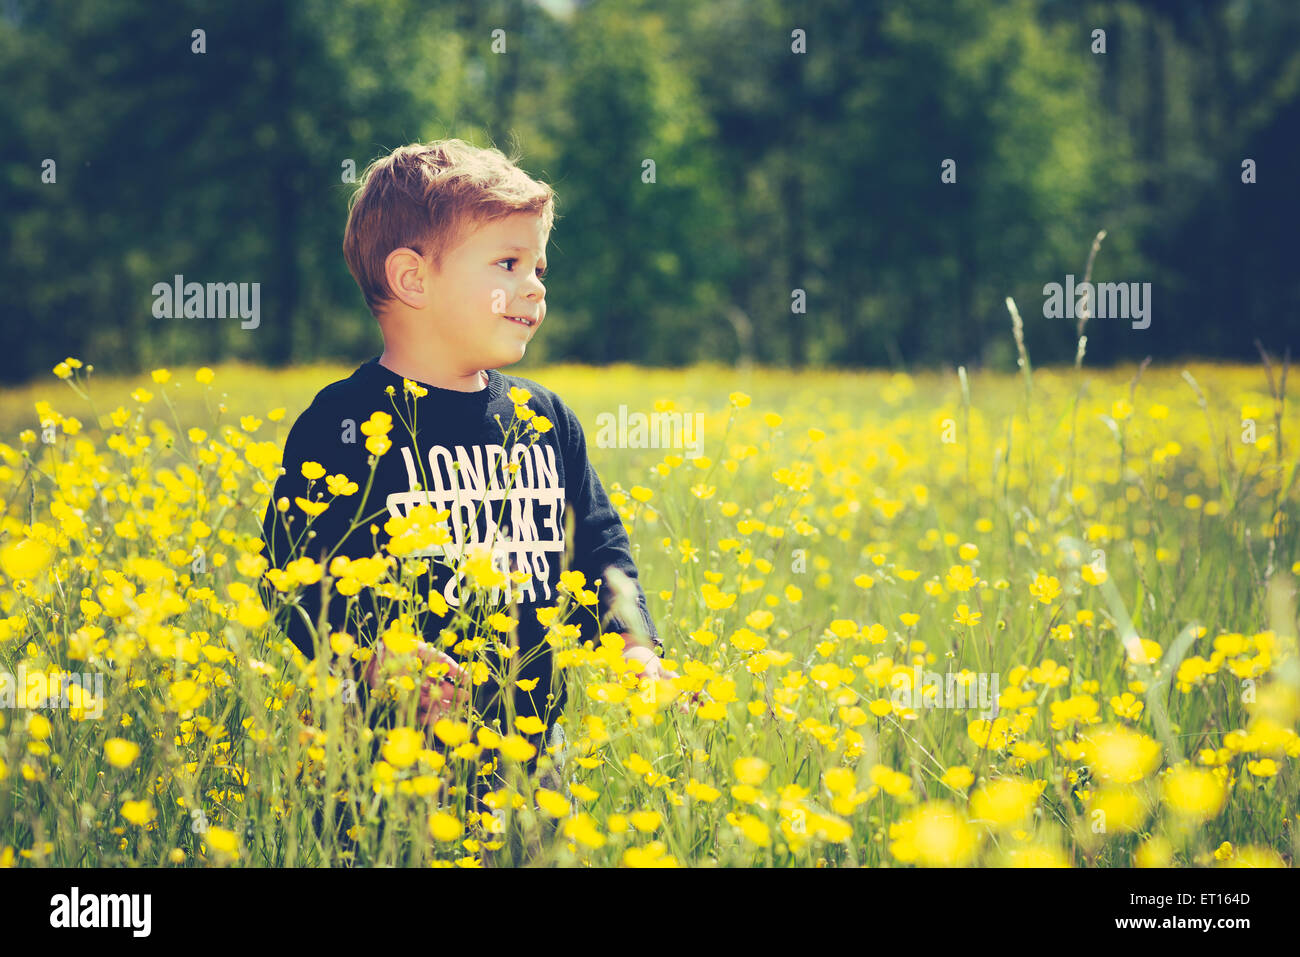 kleine süße junge Kind in einem wunderschönen gelben Blüten, Lächeln und lachen Stockfoto